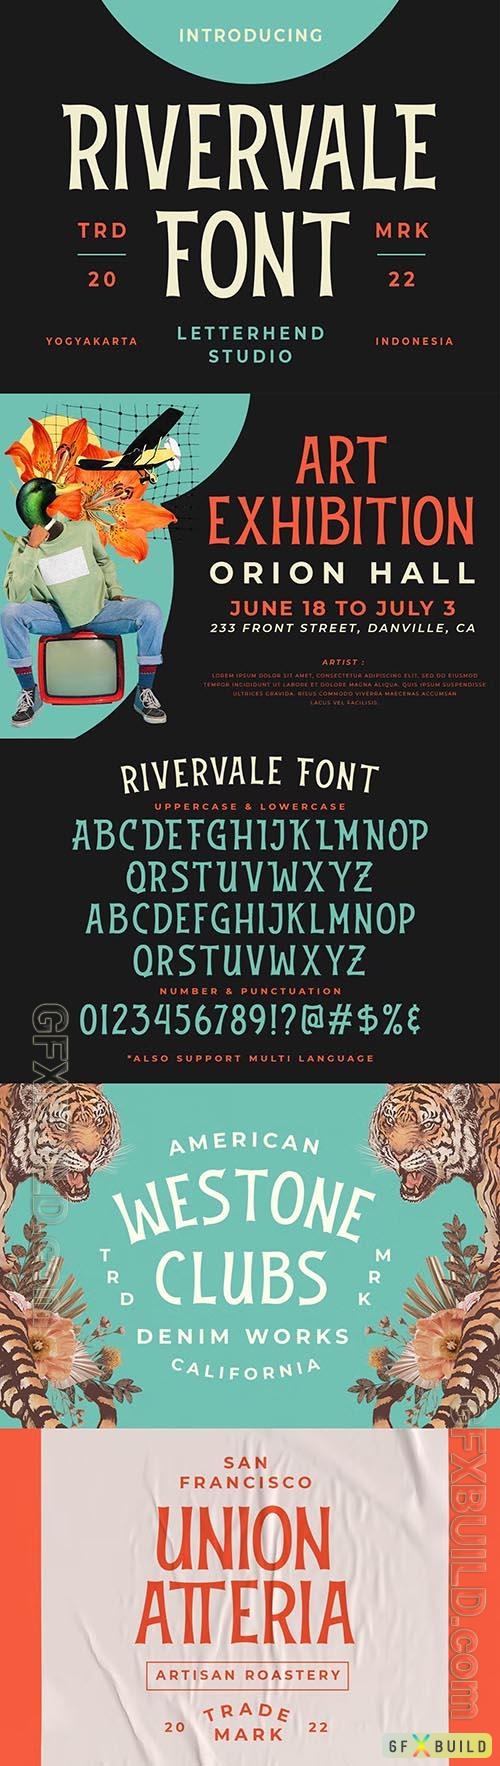 Rivervale Font OTF, TTF